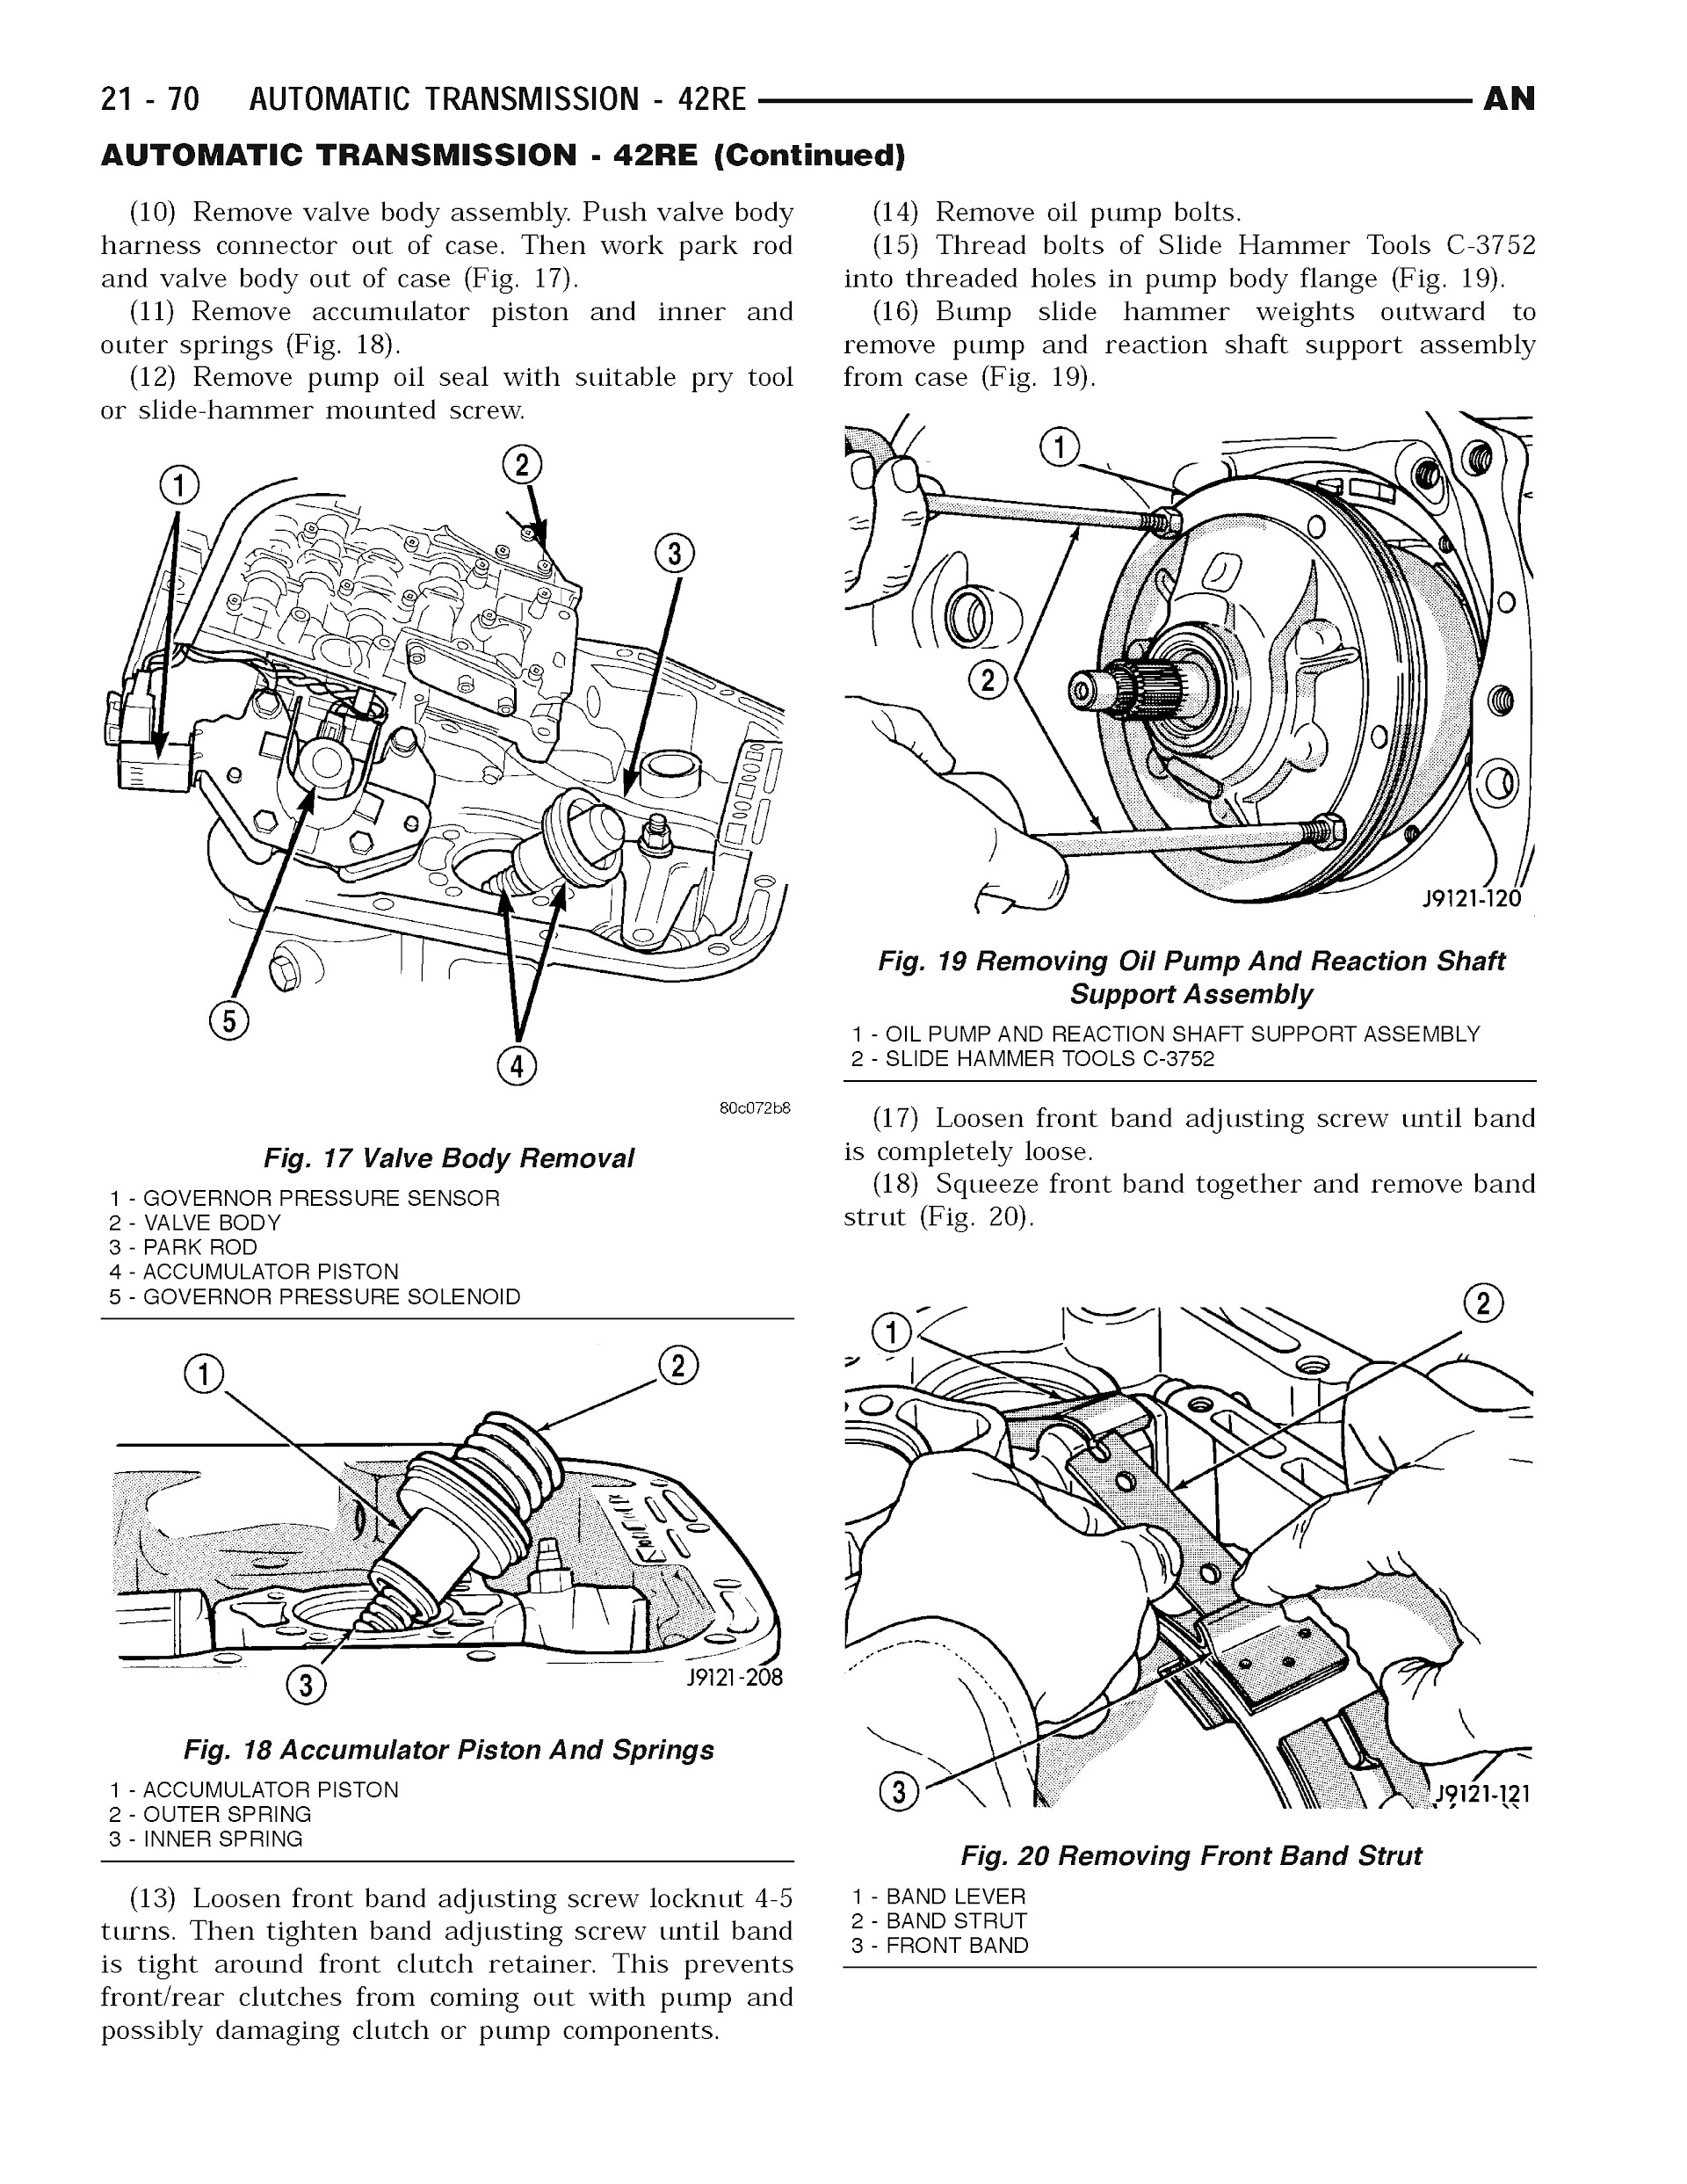 2004 Dodge Dakota Repair Manual, Automatic Transmission 42RE